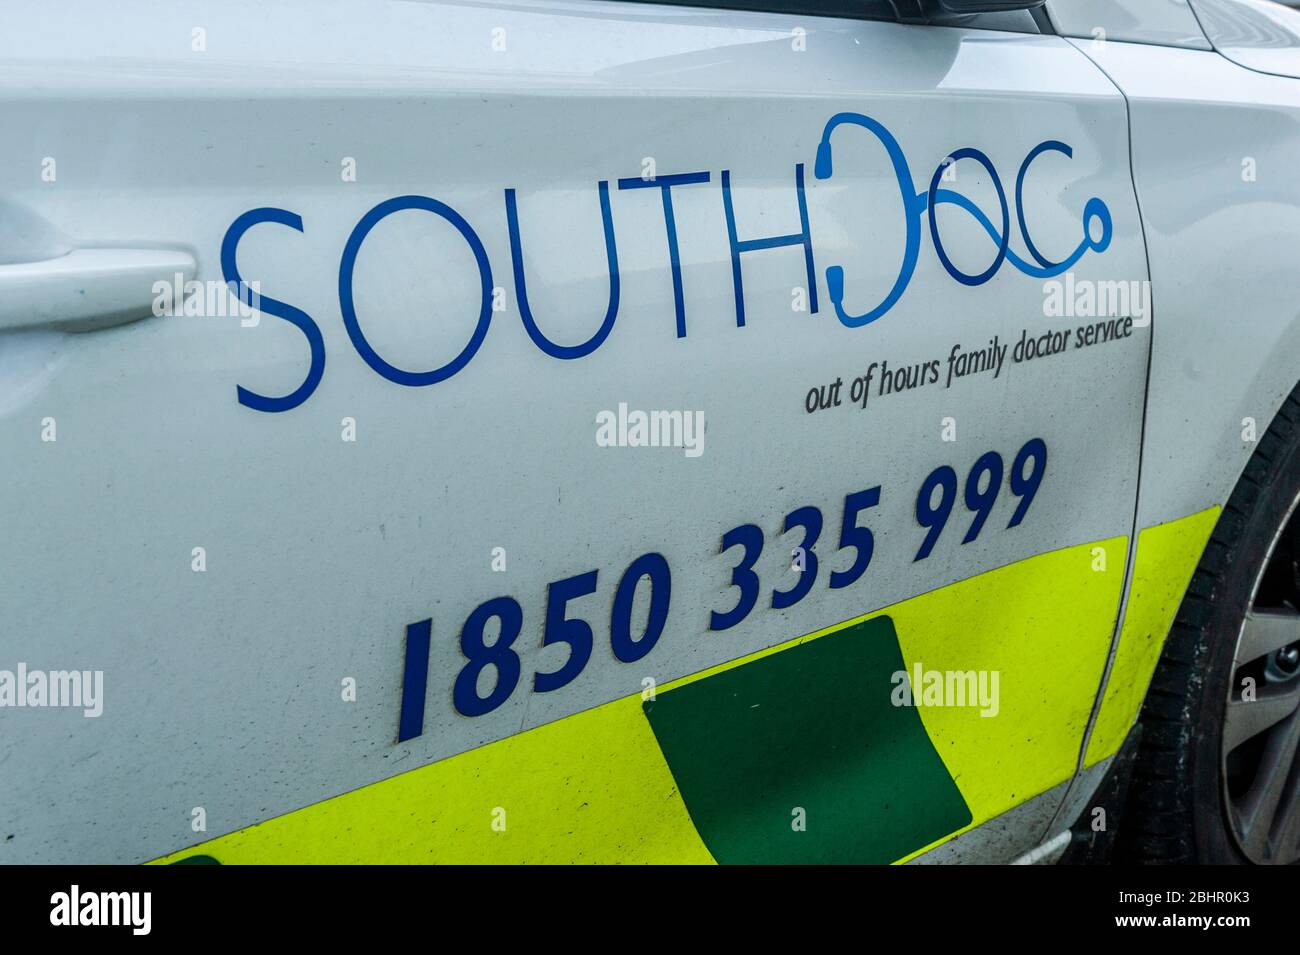 Vehículo de emergencia South Doc fuera de horario en Irlanda Foto de stock